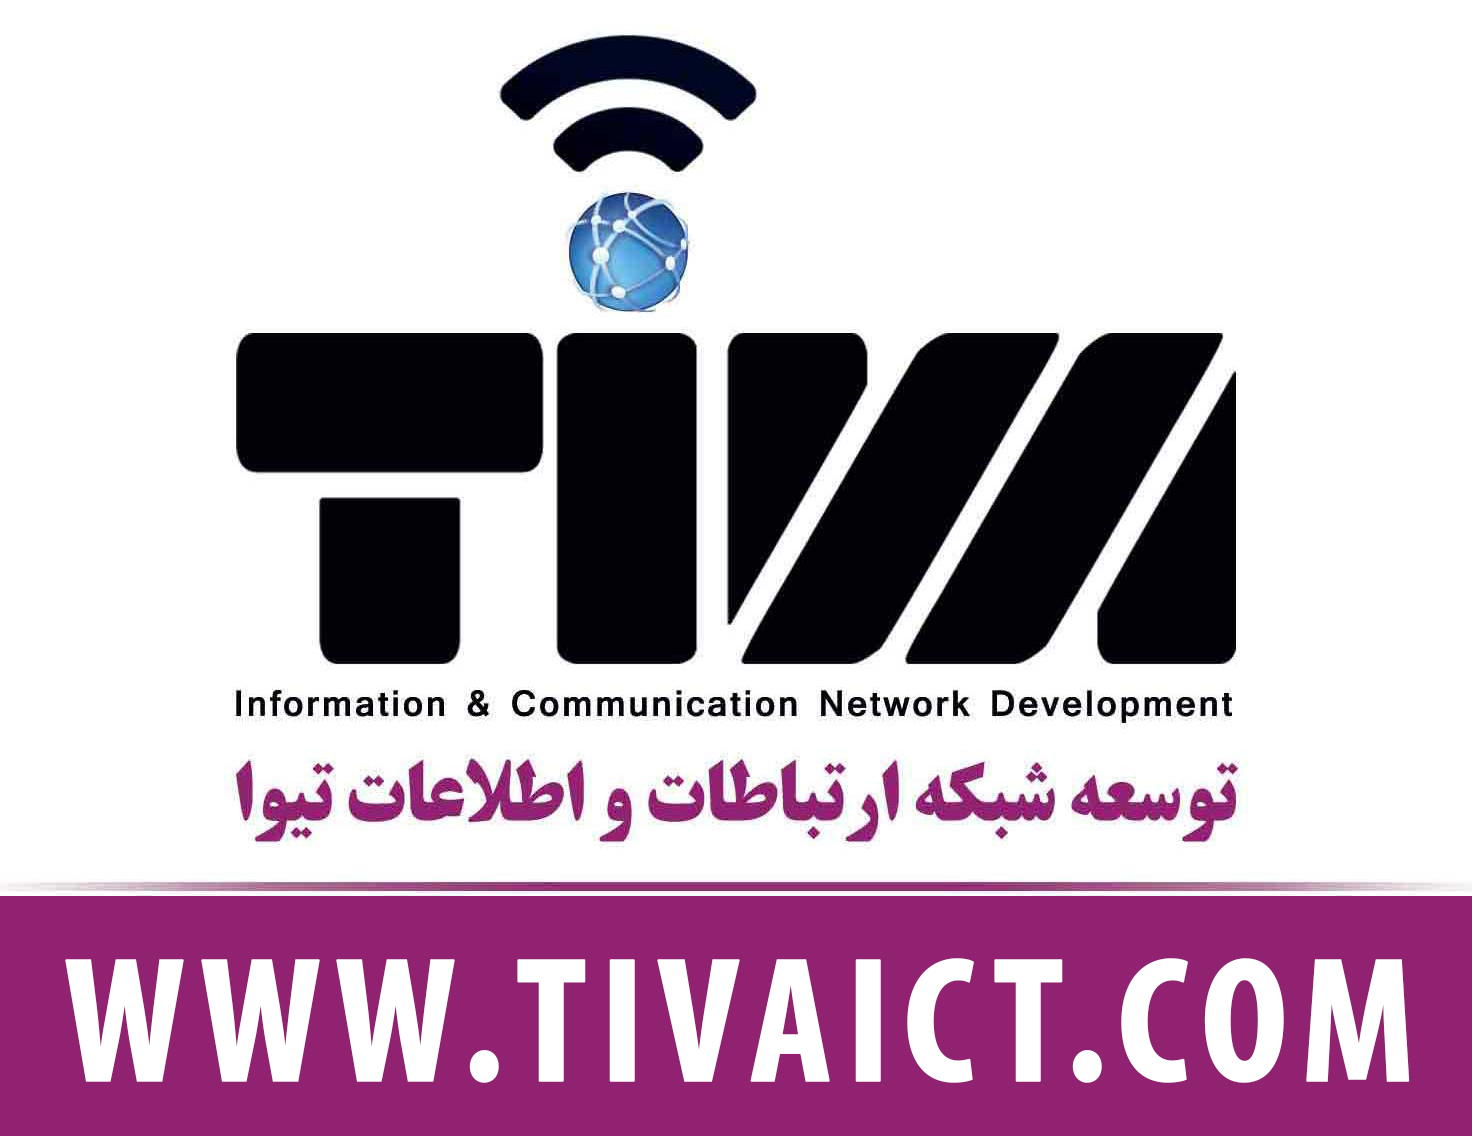 آموزش نصب دوربین مدار بسته بصورت عملی در بهترین آموزشگاه تخصصی دوربین مداربسته تهران